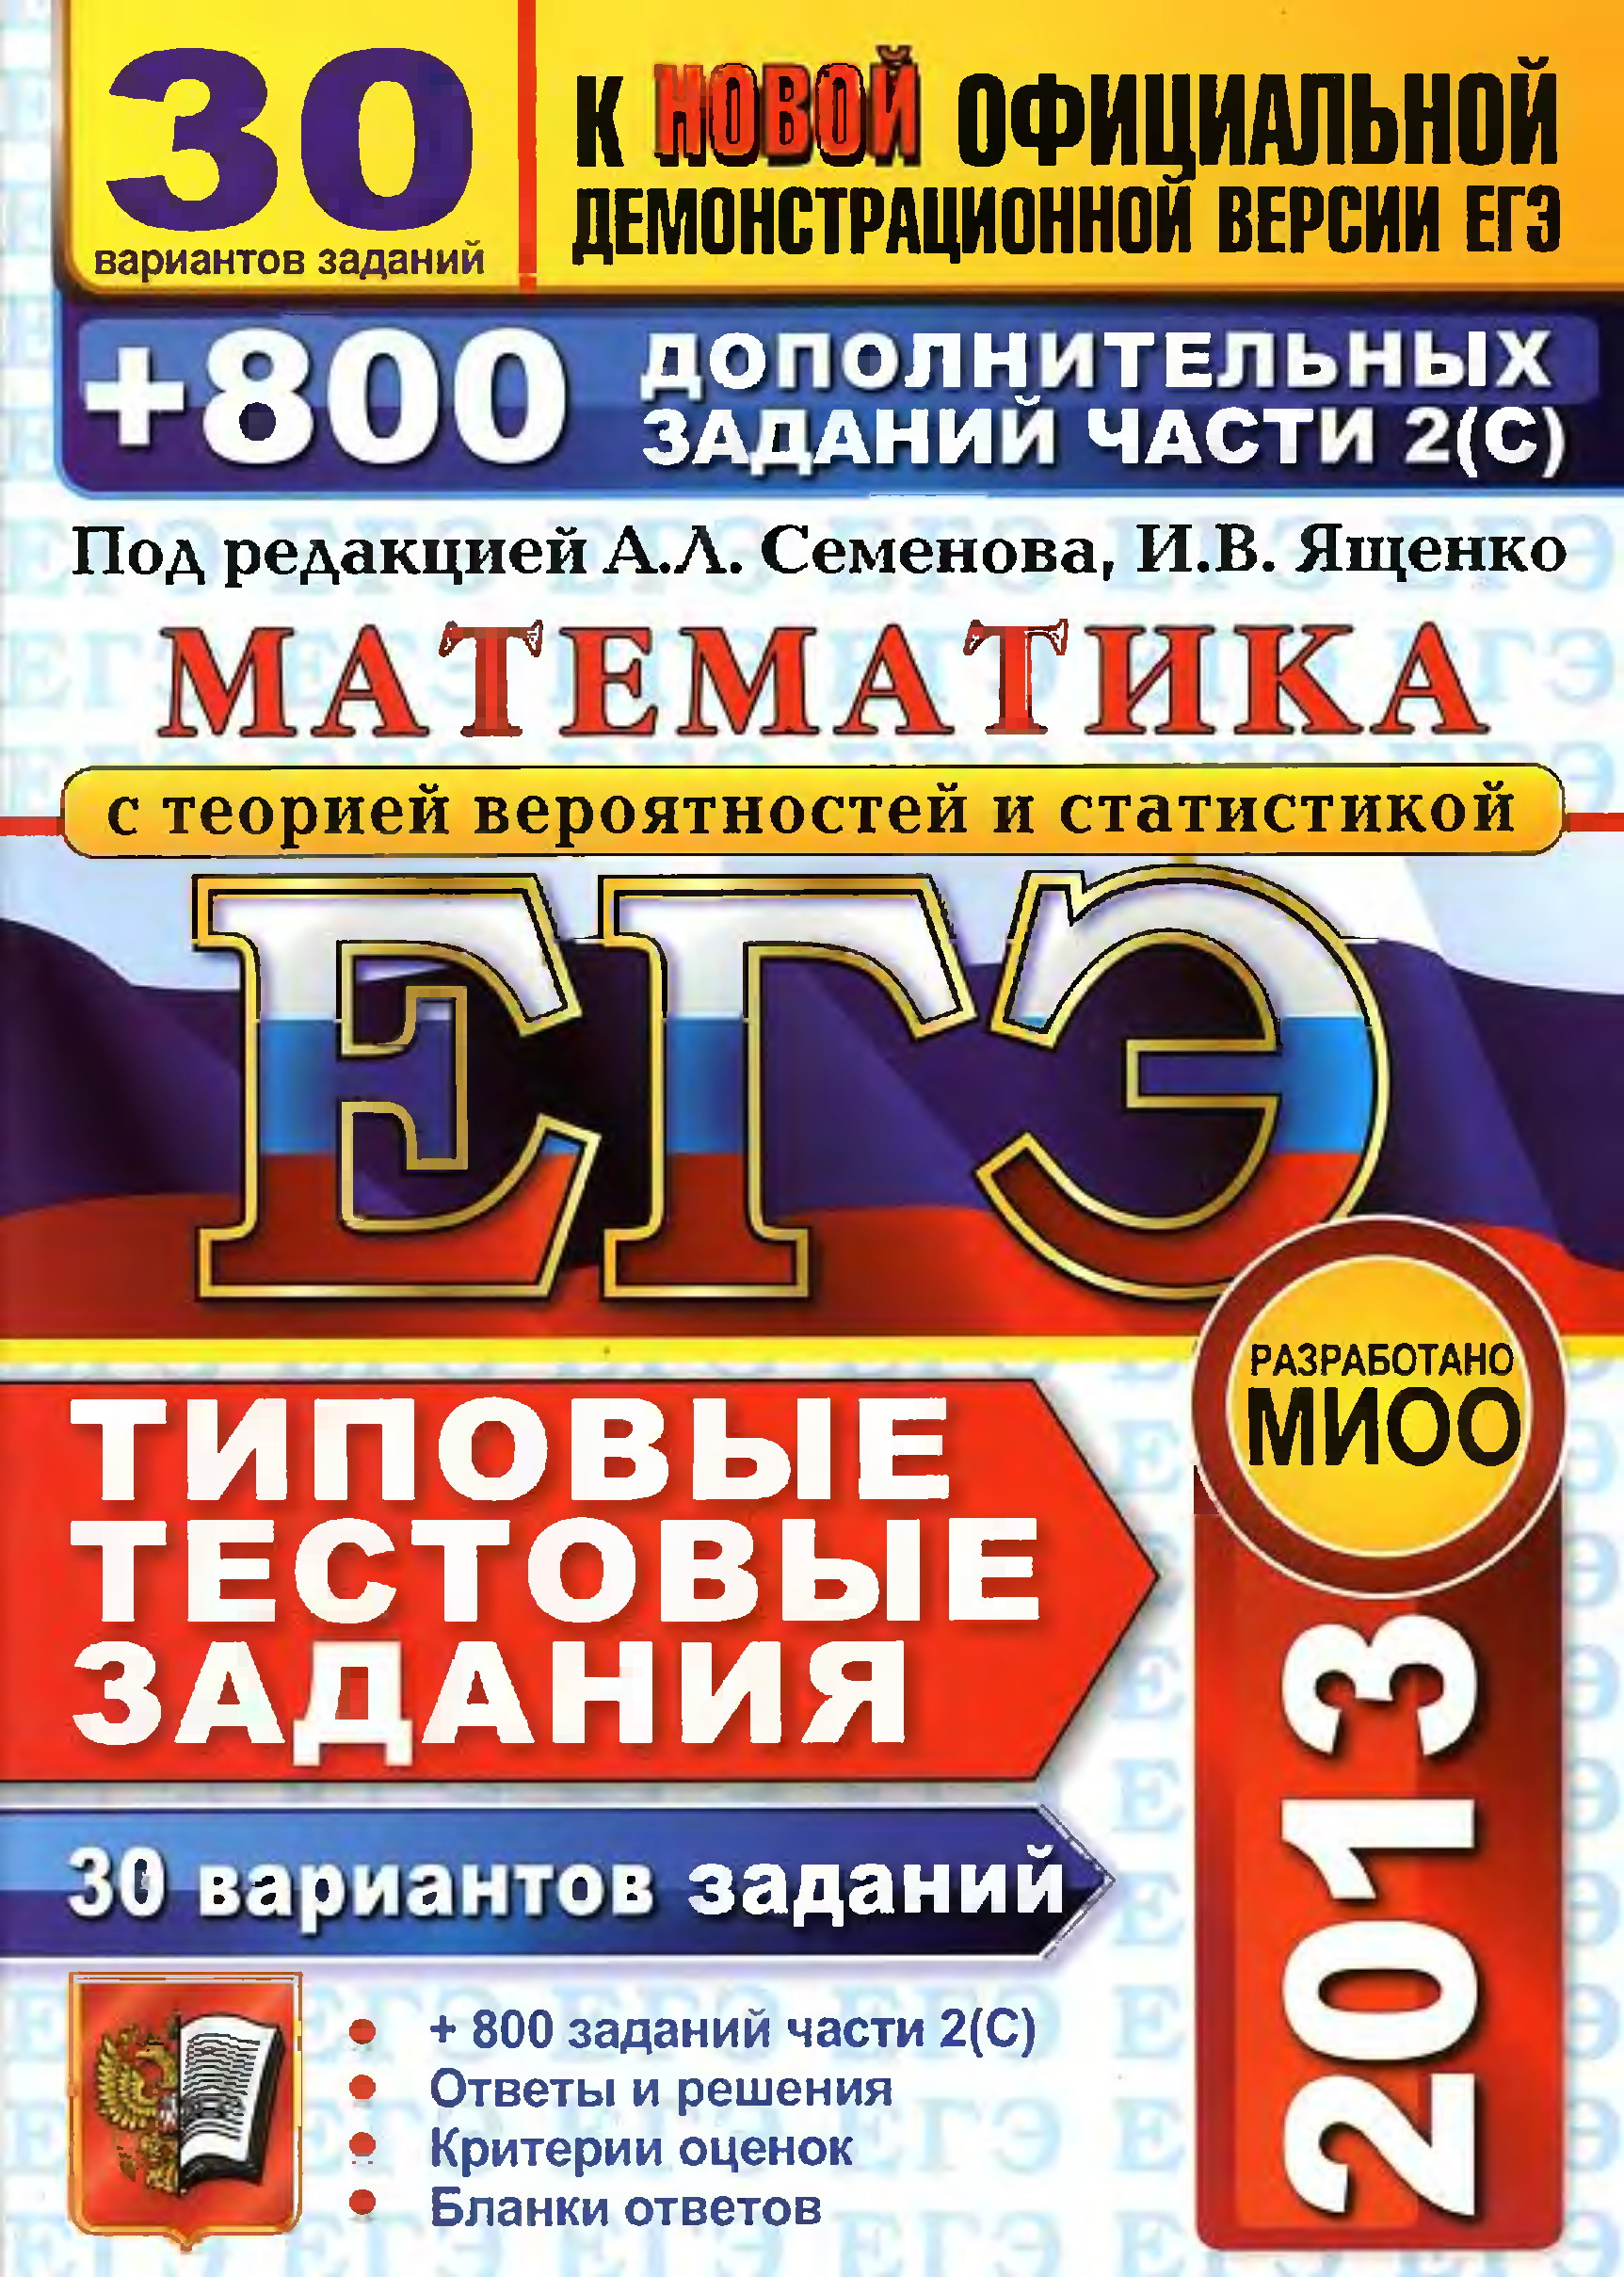 ege3013-10b